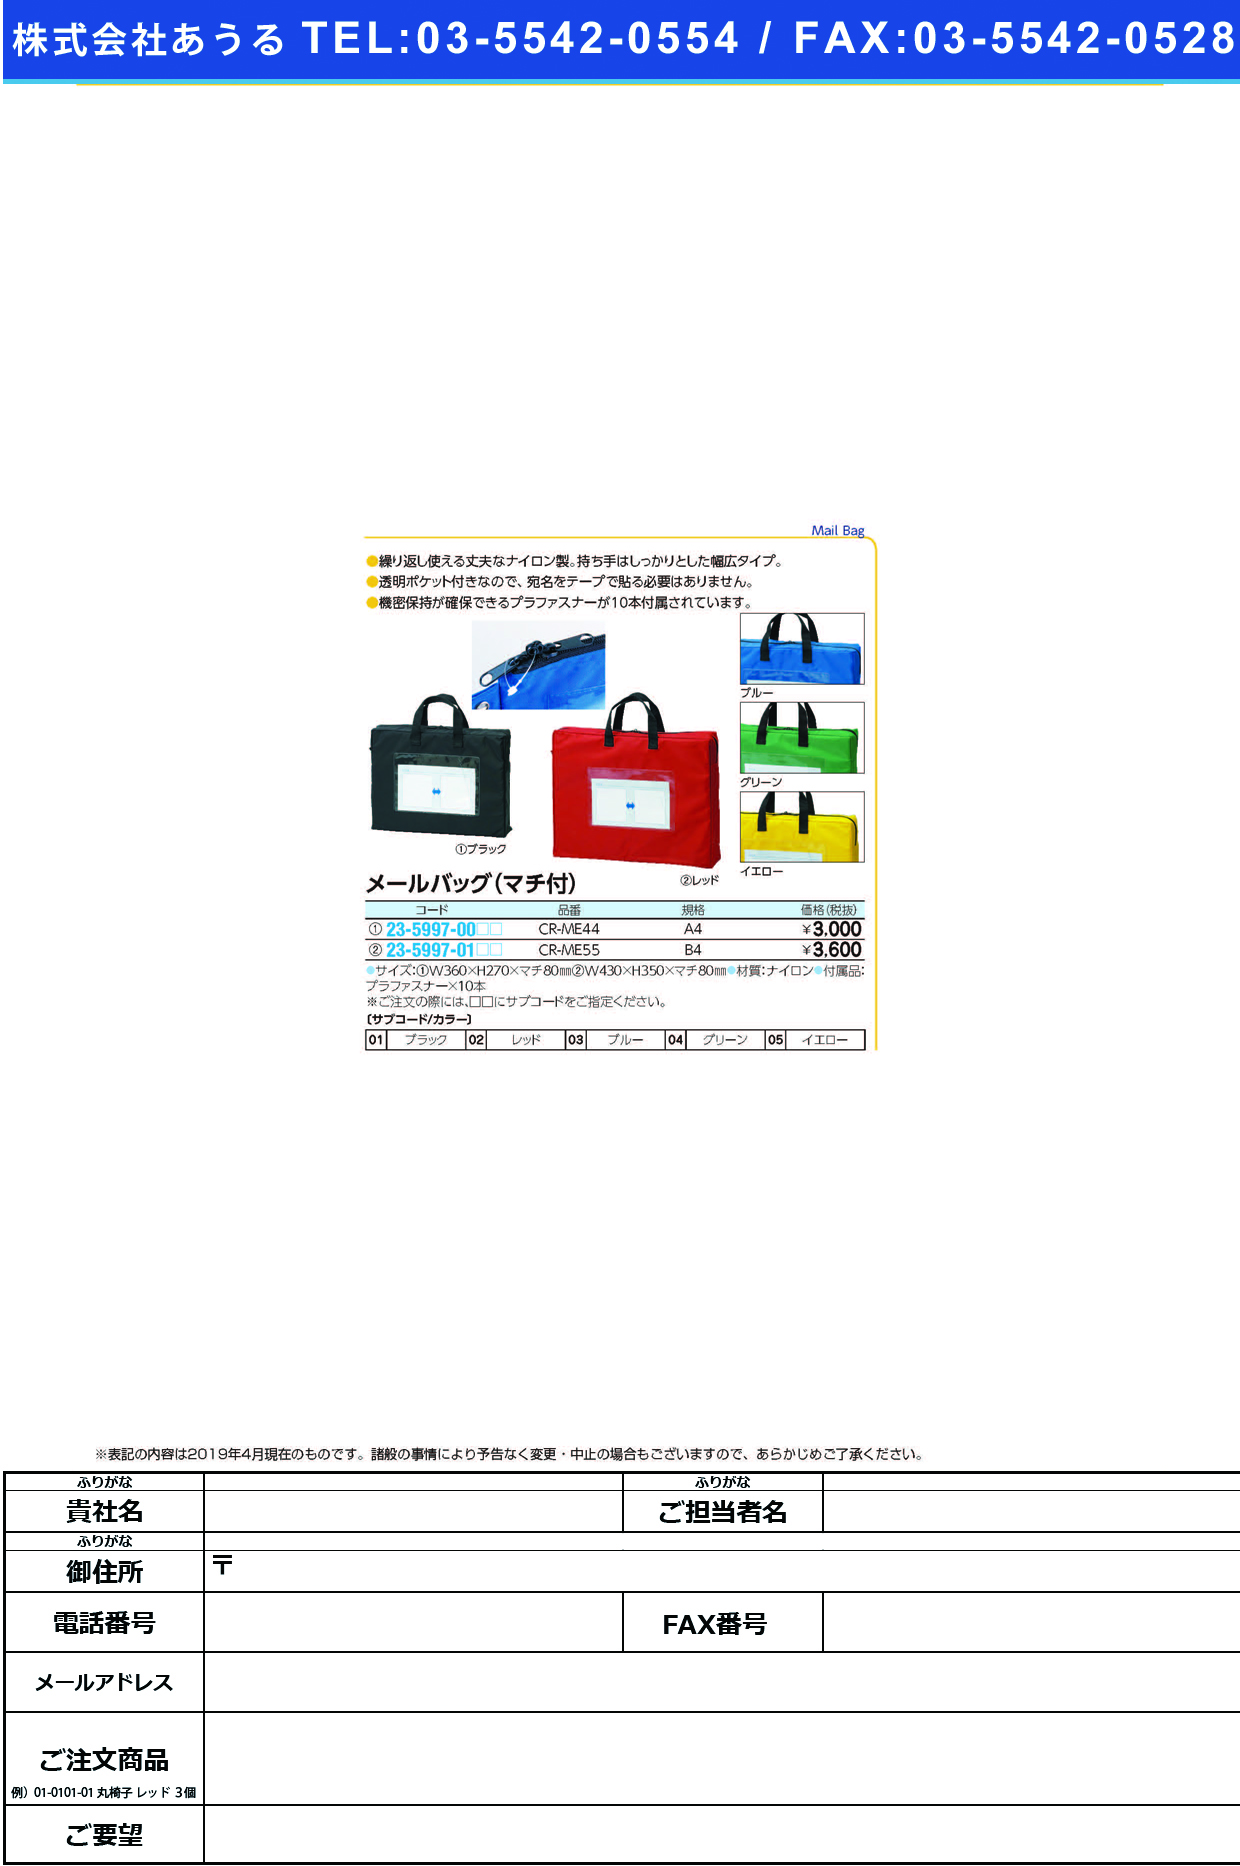 (23-5997-00)メールバッグ（マチ付） CR-ME44(A4) ﾒｰﾙﾊﾞｯｸﾞ(ﾏﾁﾂｷ) グリーン【1個単位】【2019年カタログ商品】